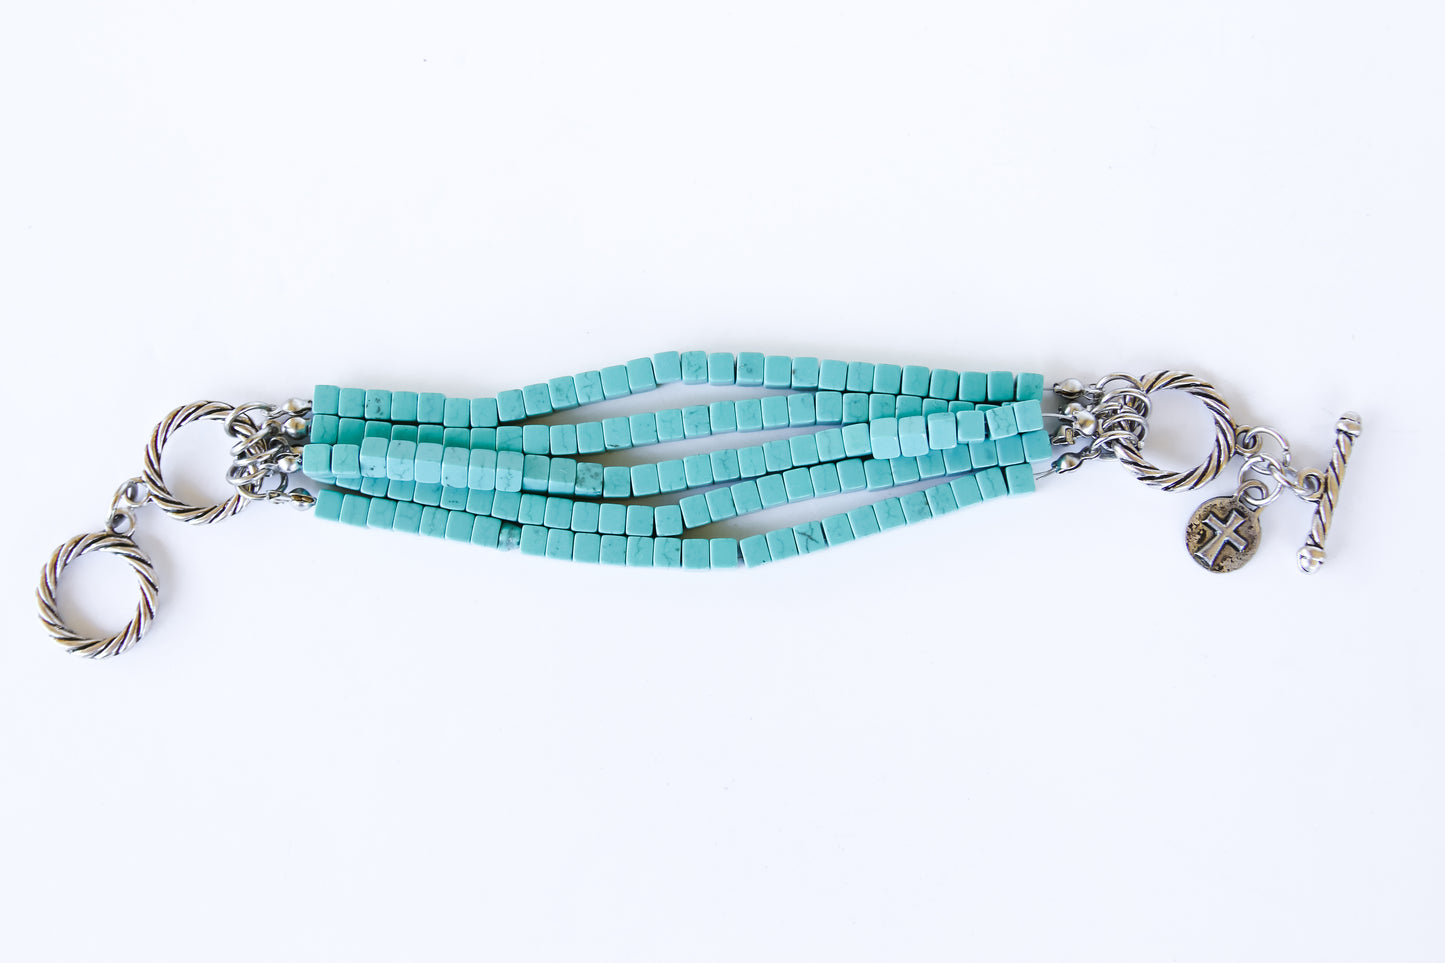 5 Strand Turquoise Bracelet